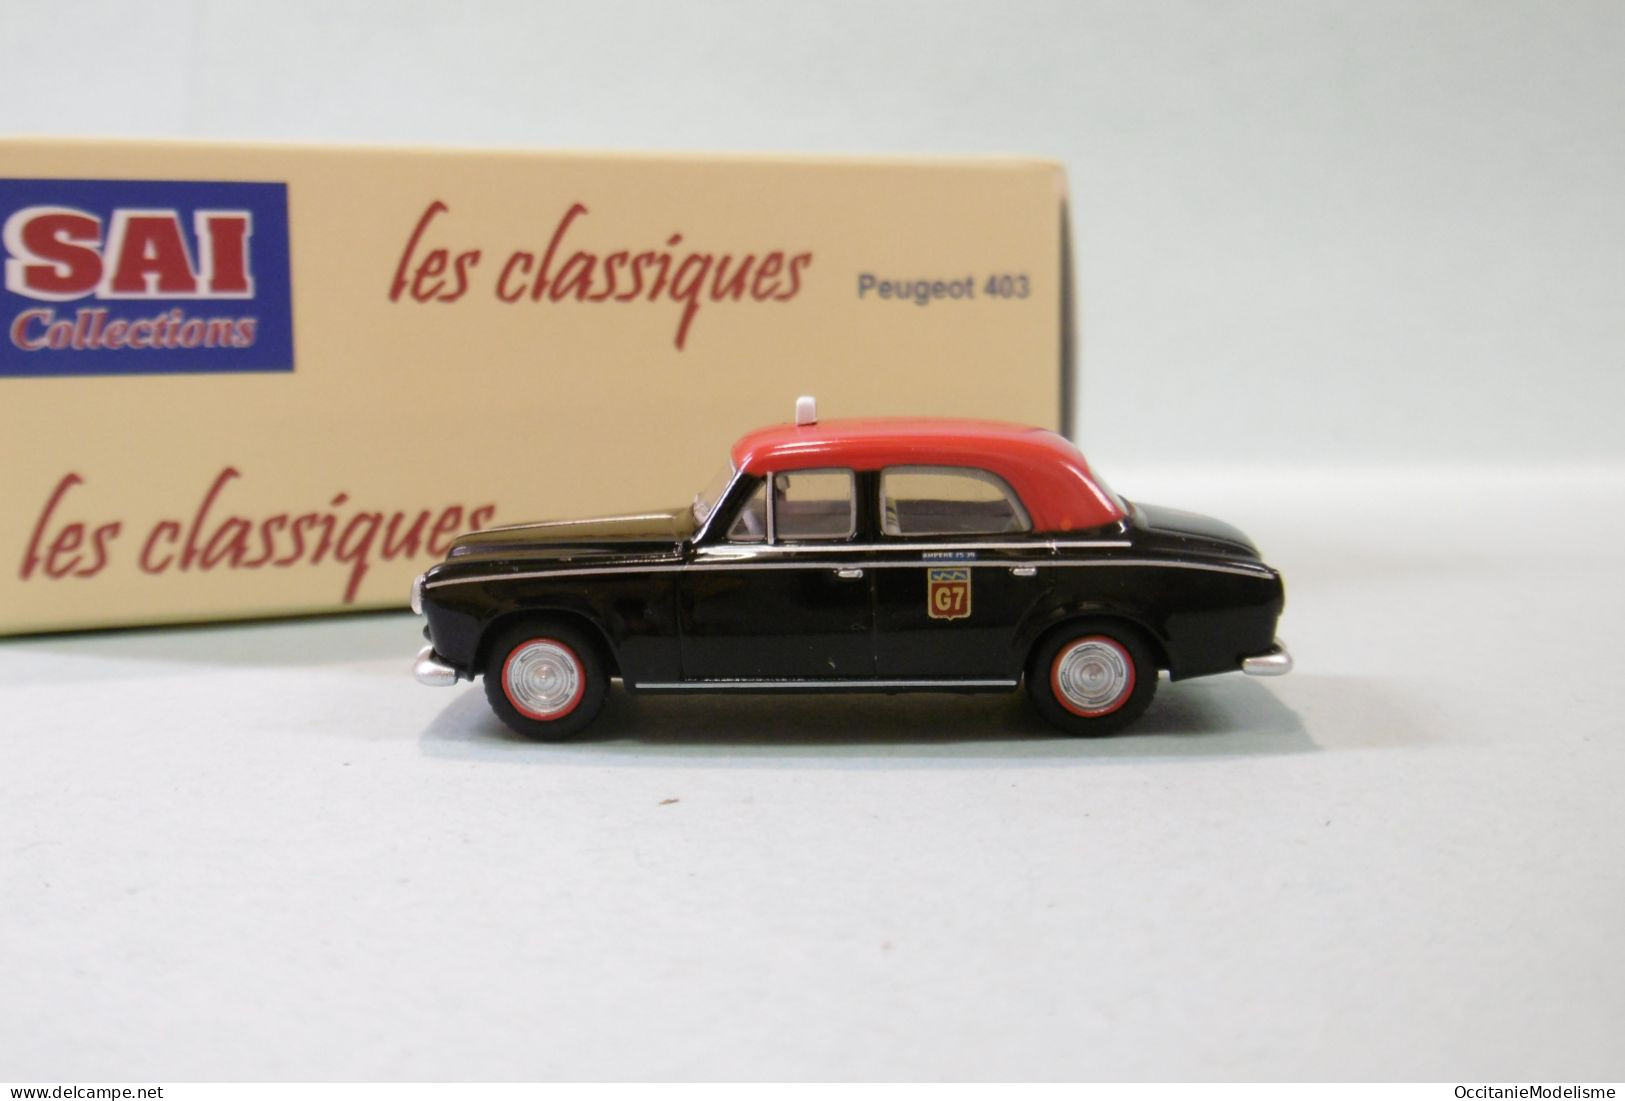 SAI Les Classiques - PEUGEOT 403 7 Taxi G7 1960 Réf. 6241 Neuf NBO HO 1/87 - Véhicules Routiers